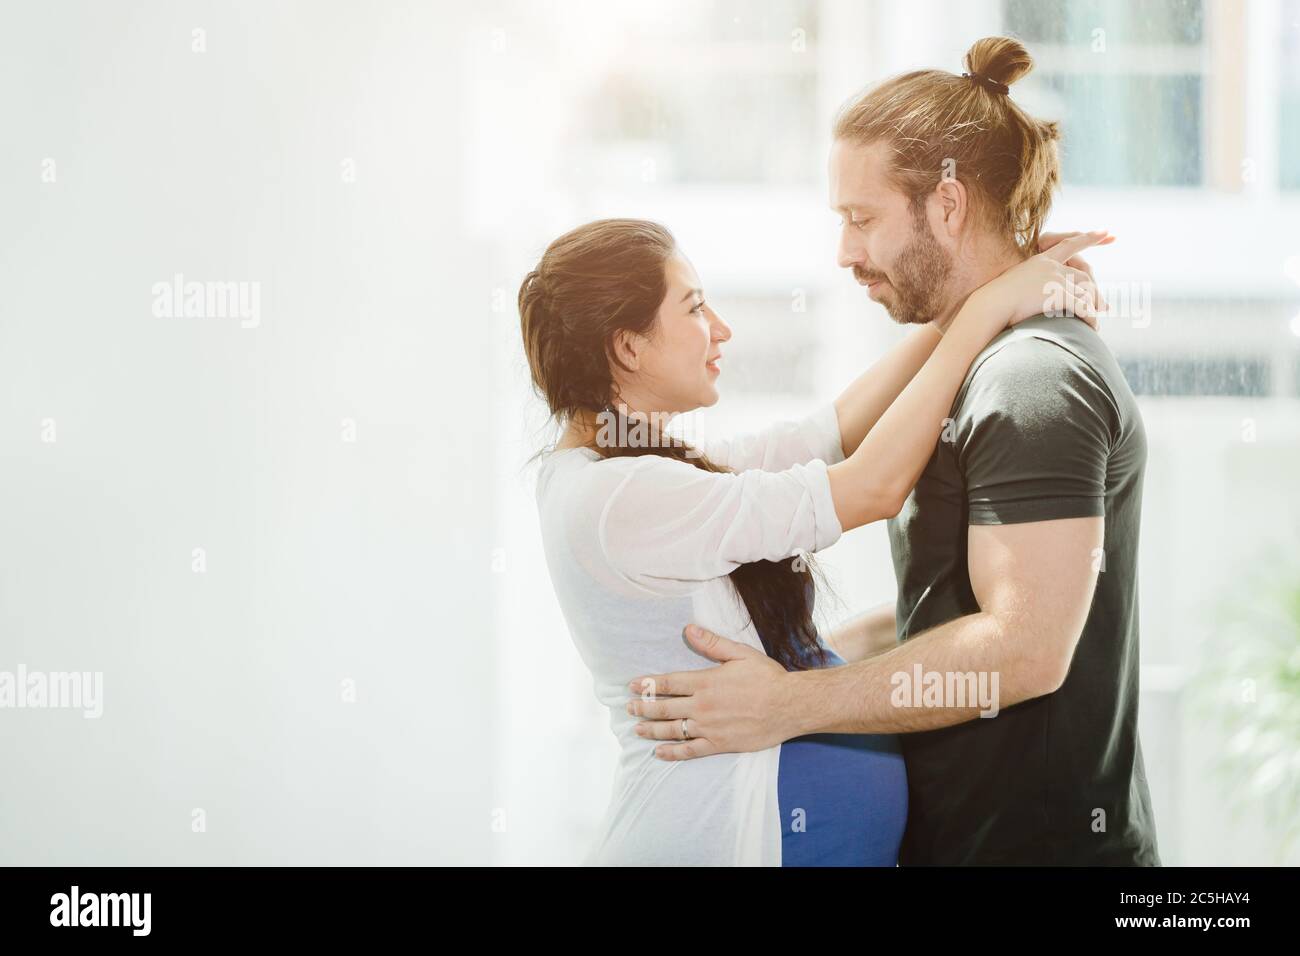 Schwangere Frau Frau stehend, umarmt den Mann, zusammen mit Liebe und Verbindung suchen, zeigt die Wärme der Liebespaare Stockfoto